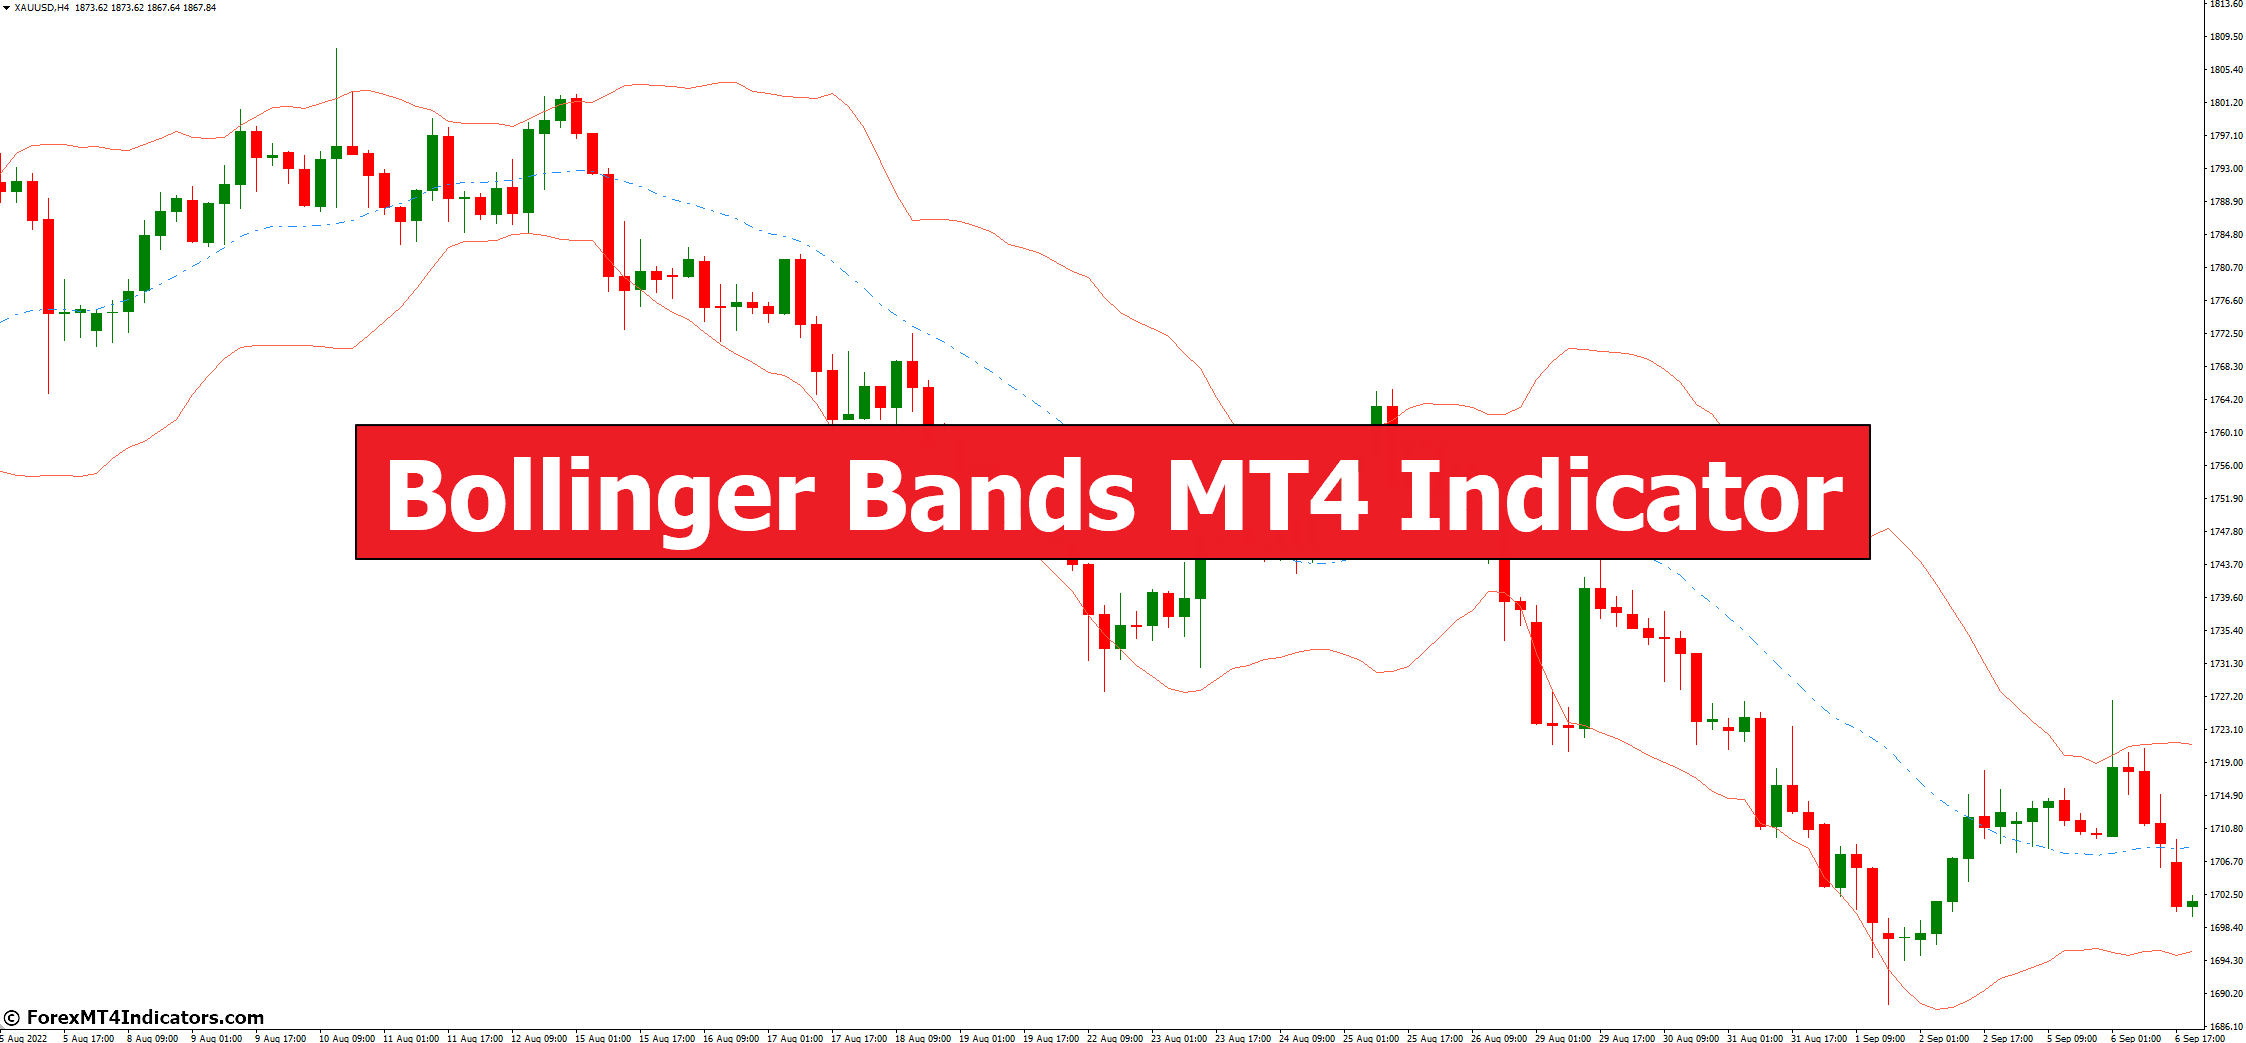 Bollinger Bands MT4 Indicator